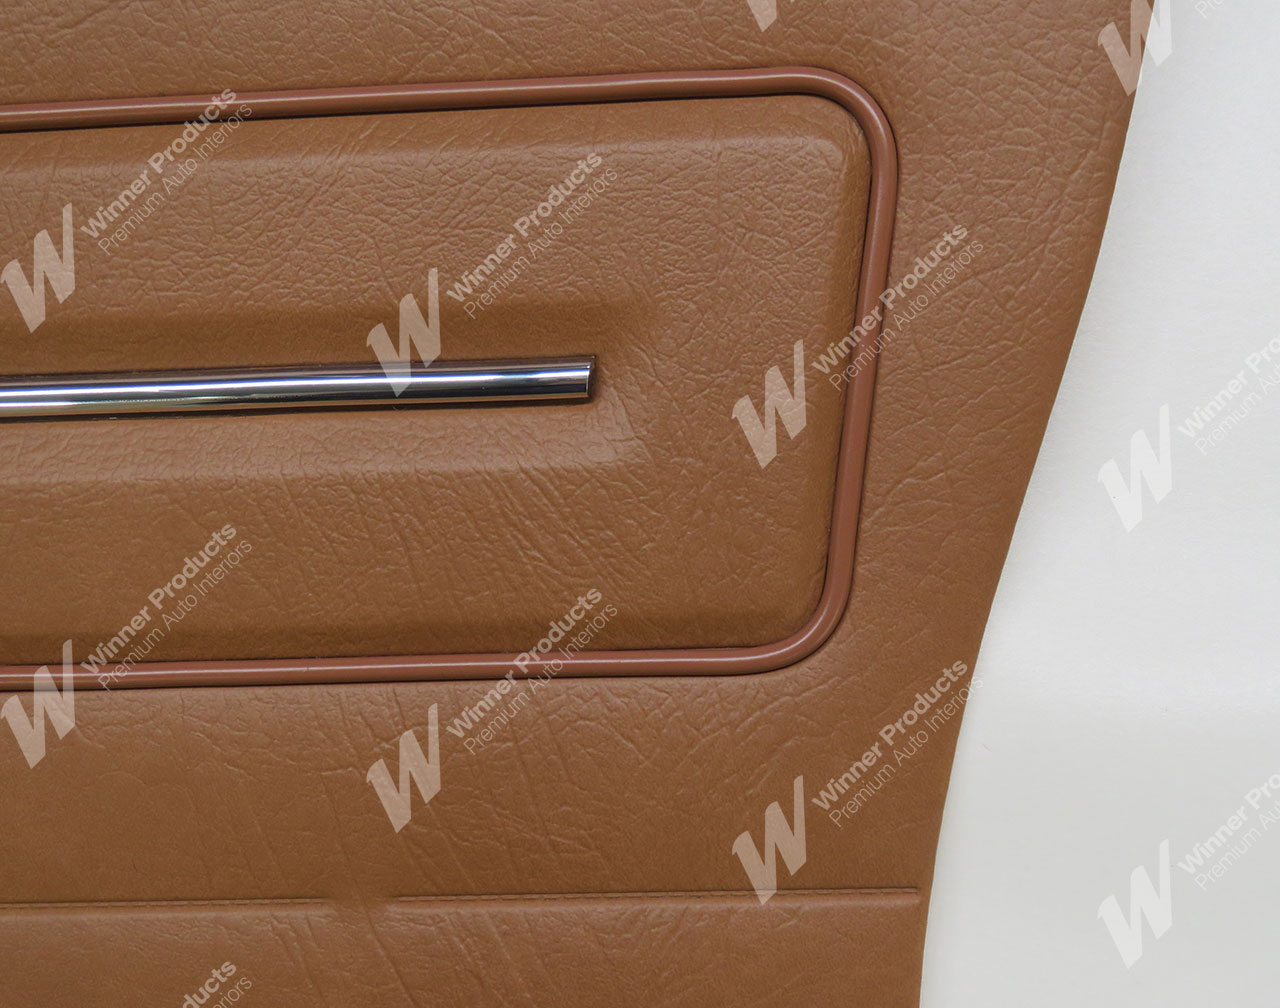 Holden Kingswood HJ Kingswood Wagon 64V Gazelle Door Trims (Image 3 of 3)